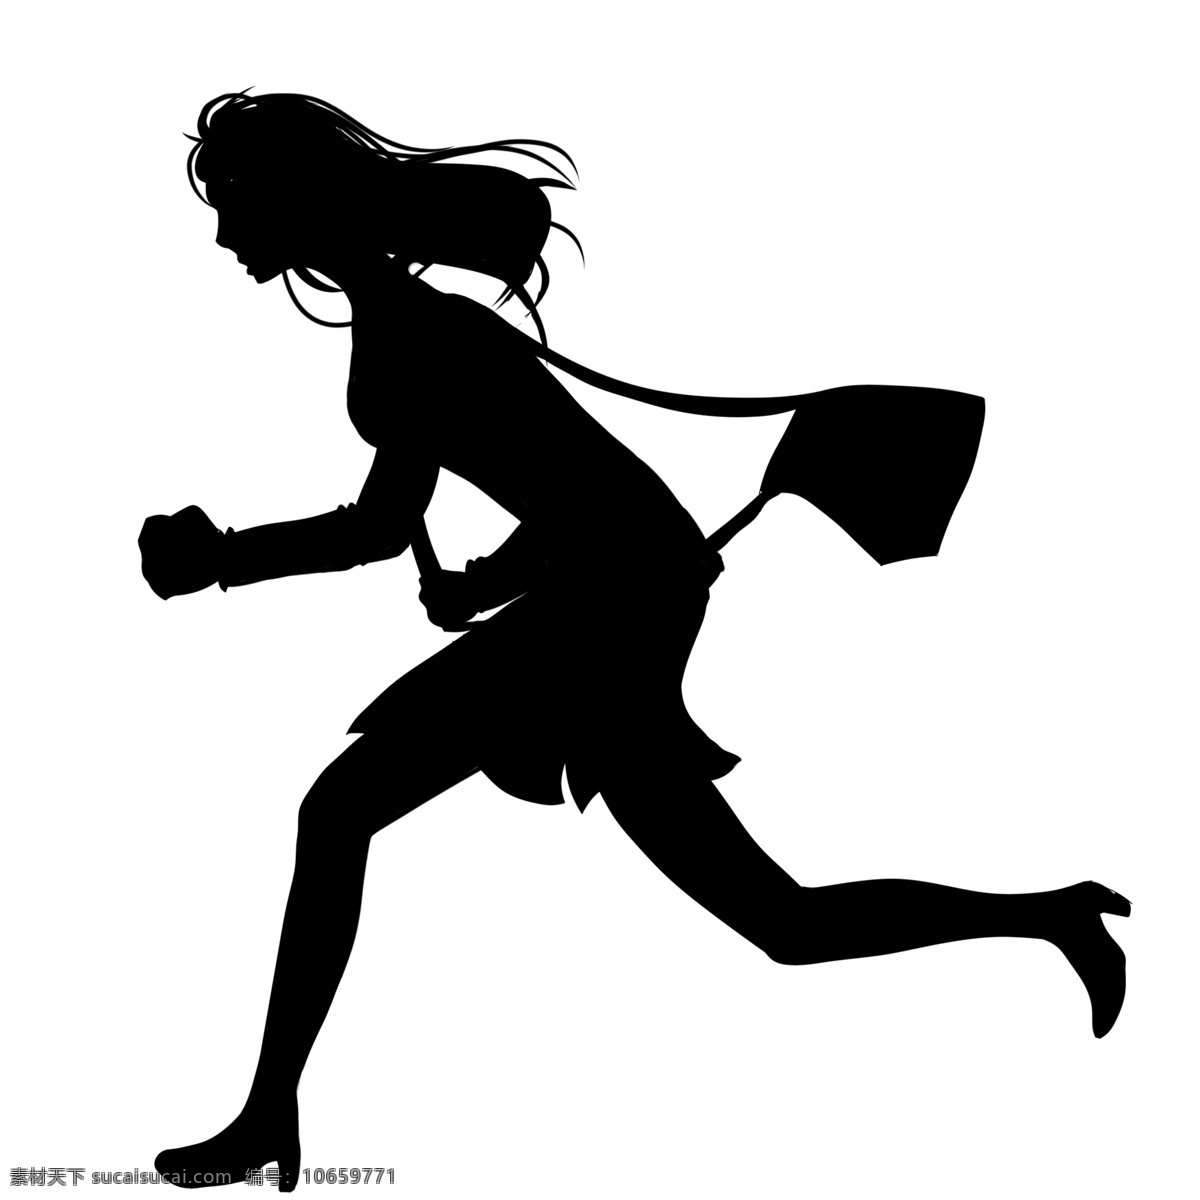 奔跑 企业 人物 插画 准时上下班 时间就是金钱 绞线率 高速度 抓紧时间 企业文化 插图 女士